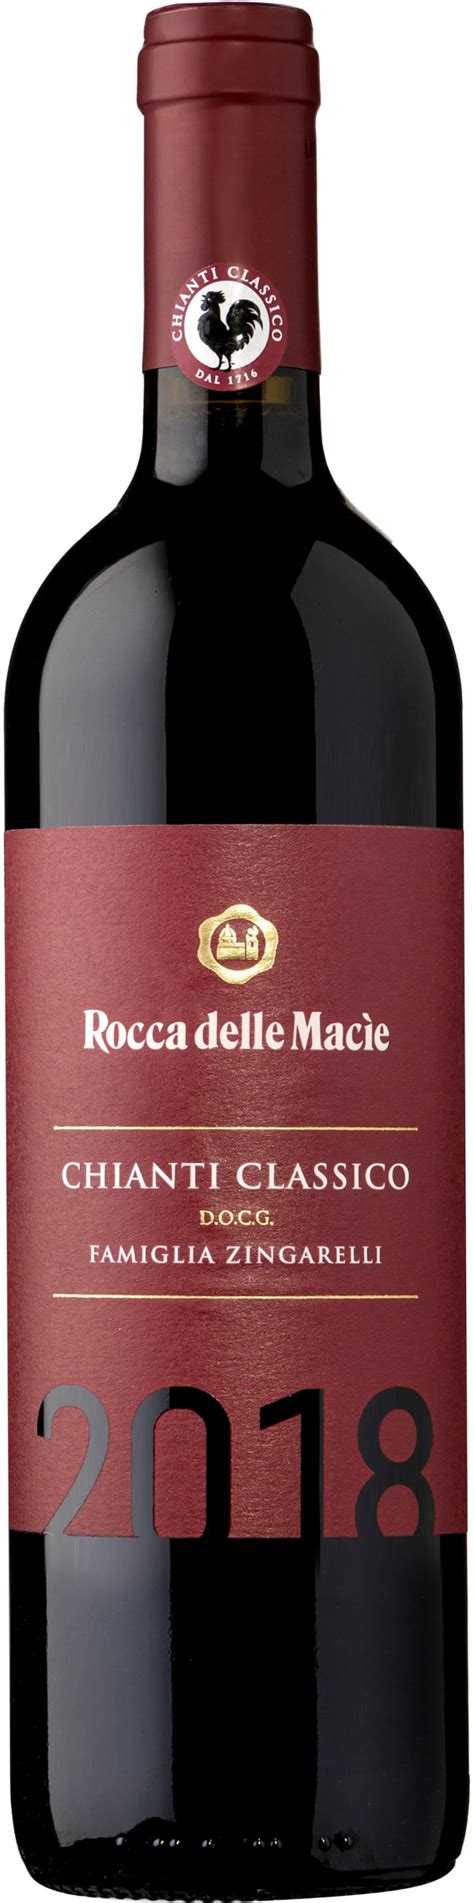 Rocca Delle Macie Chianti Classico 2018 Alko